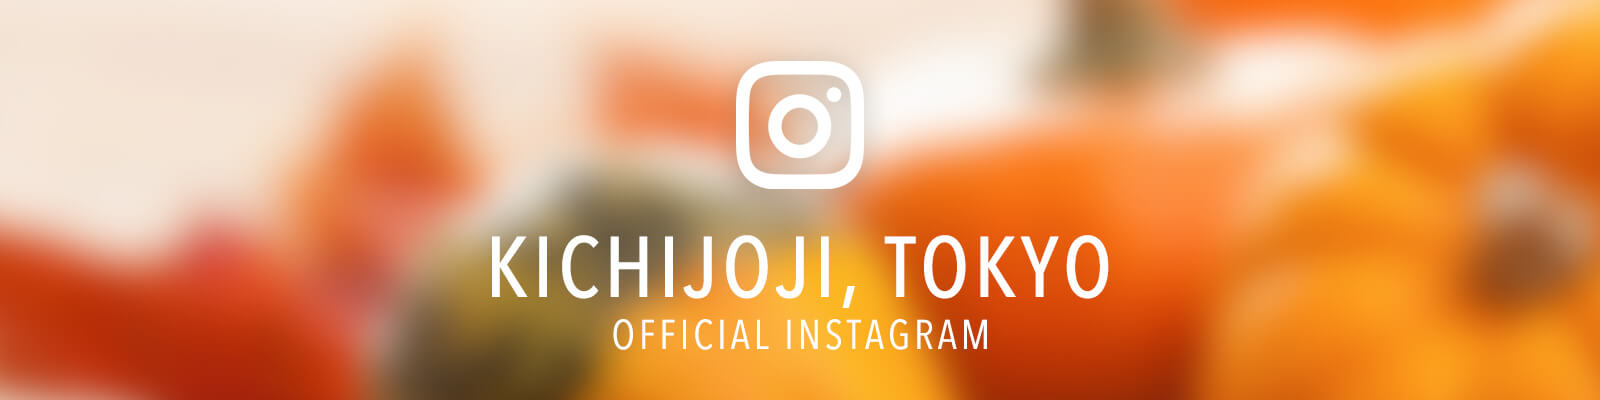 instagram_kichijoji